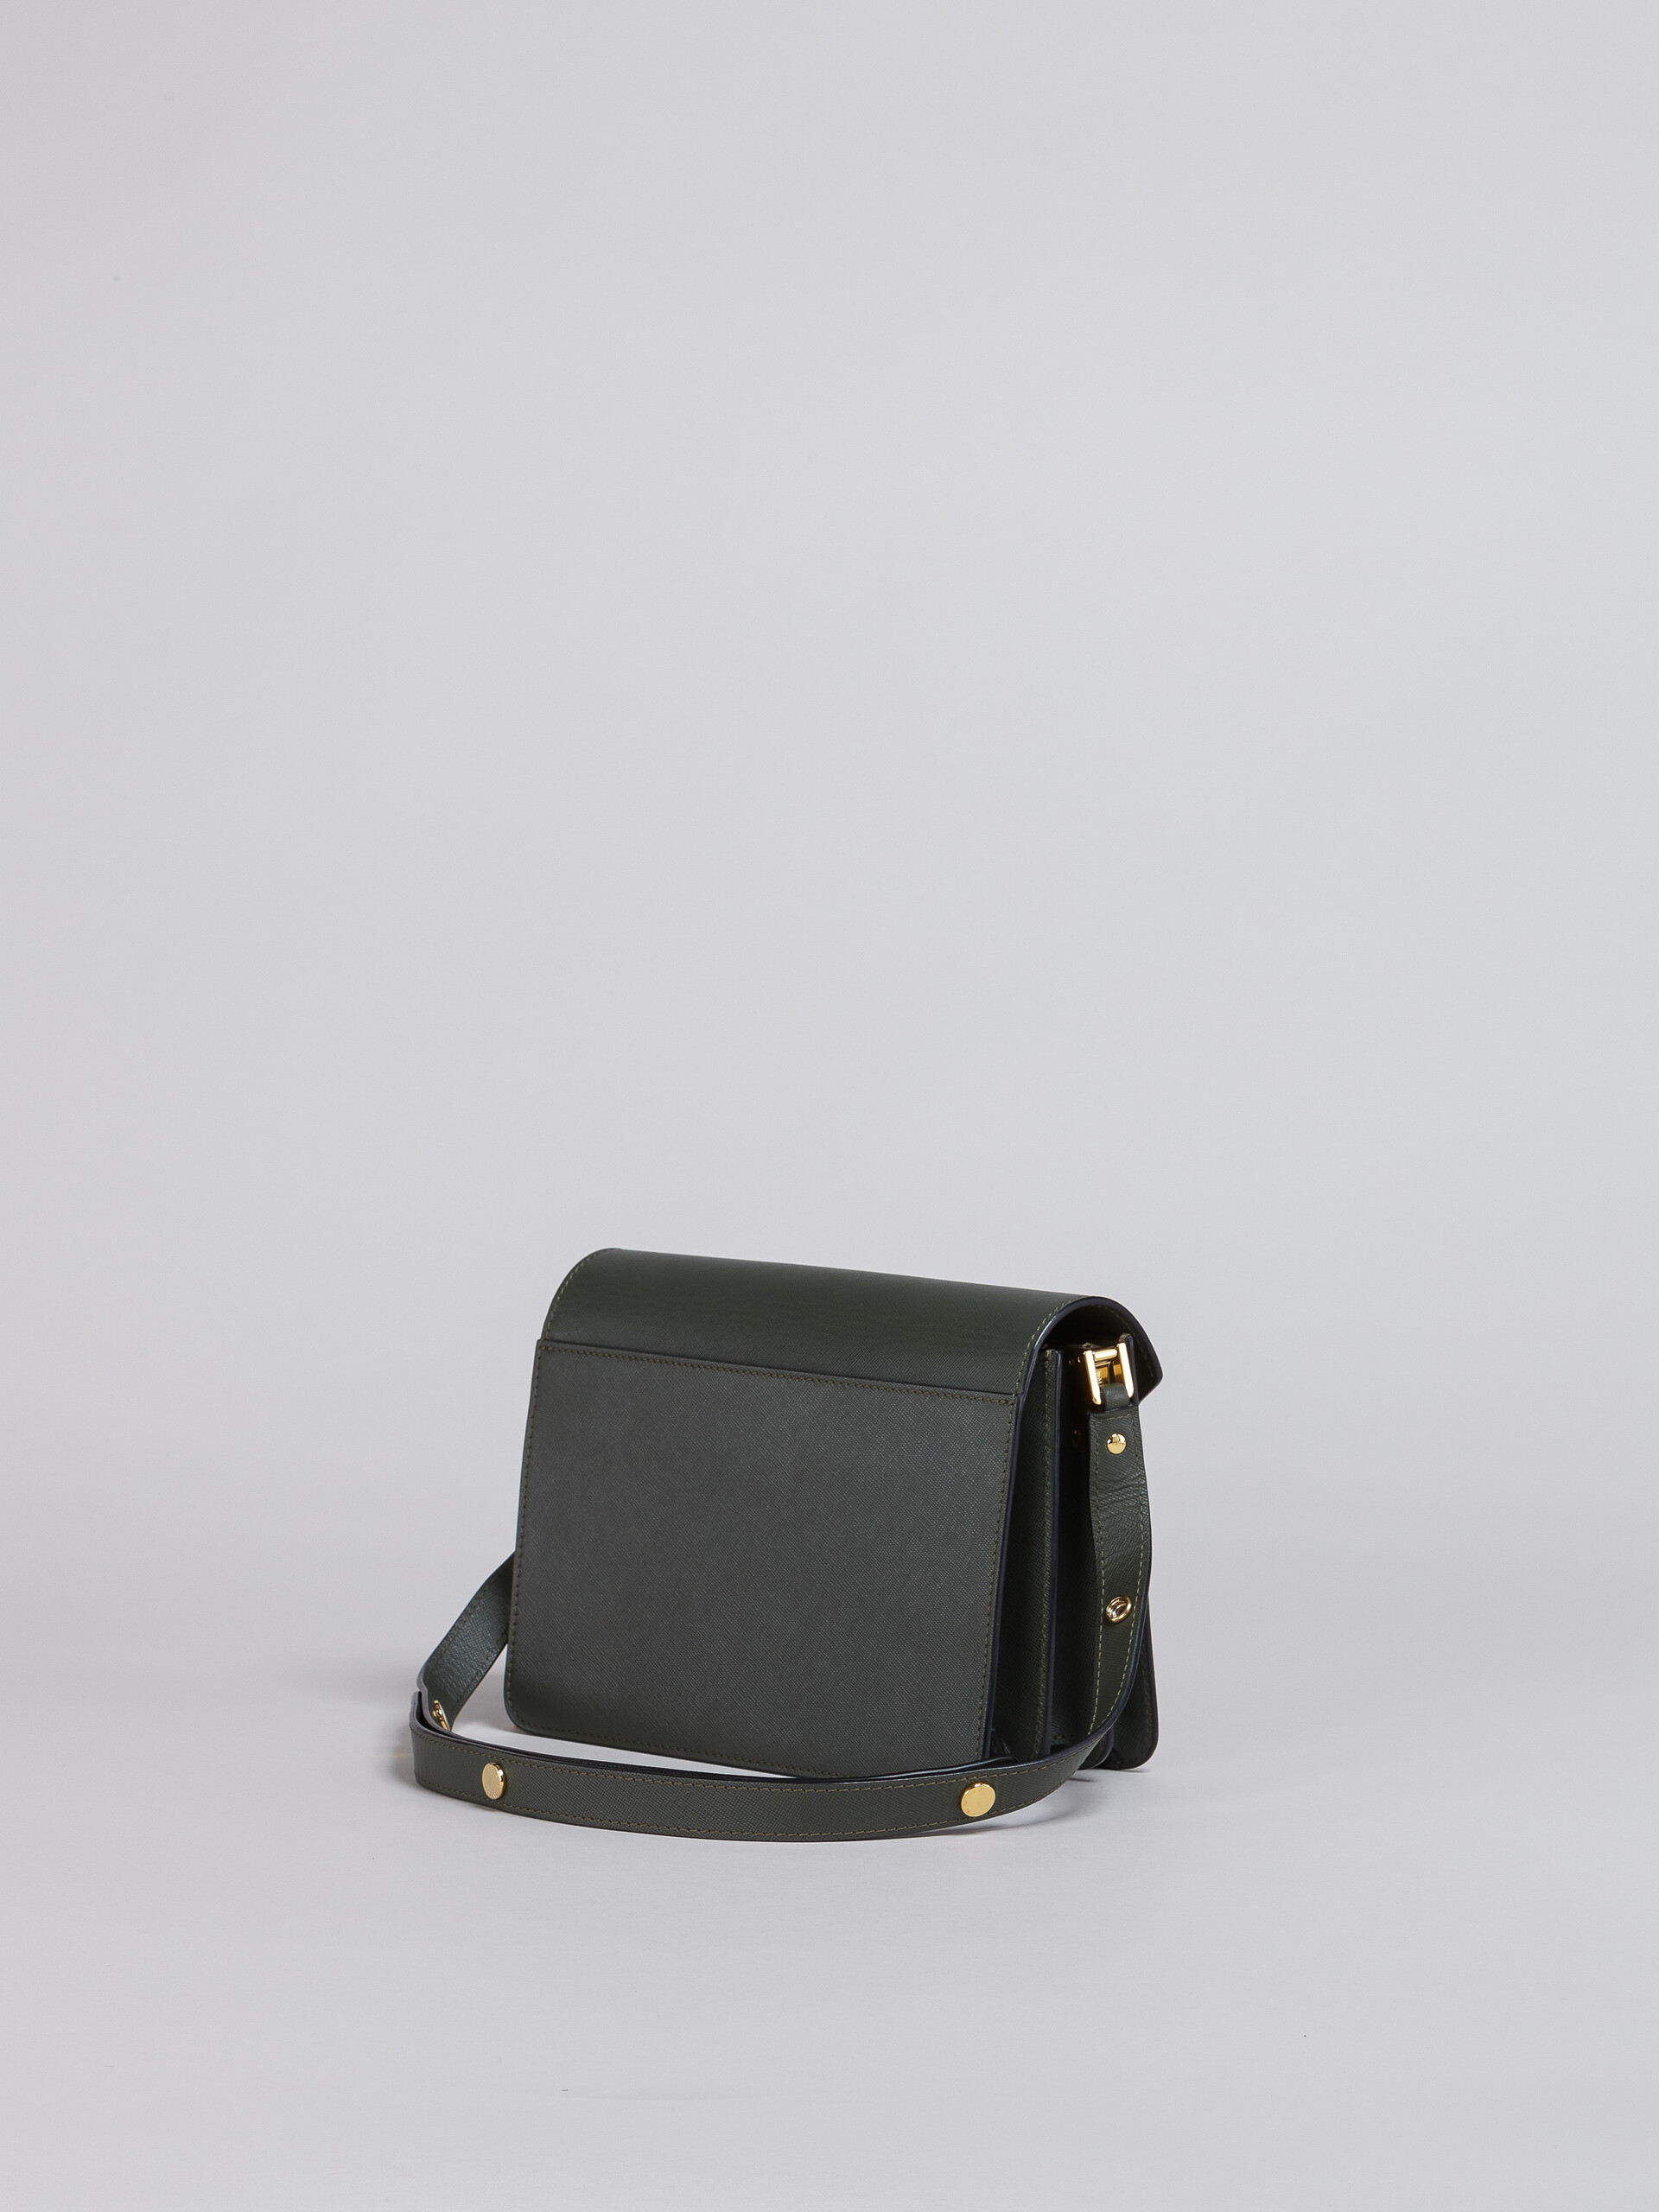 TRUNK medium bag in grey saffiano leather - Shoulder Bag - Image 2